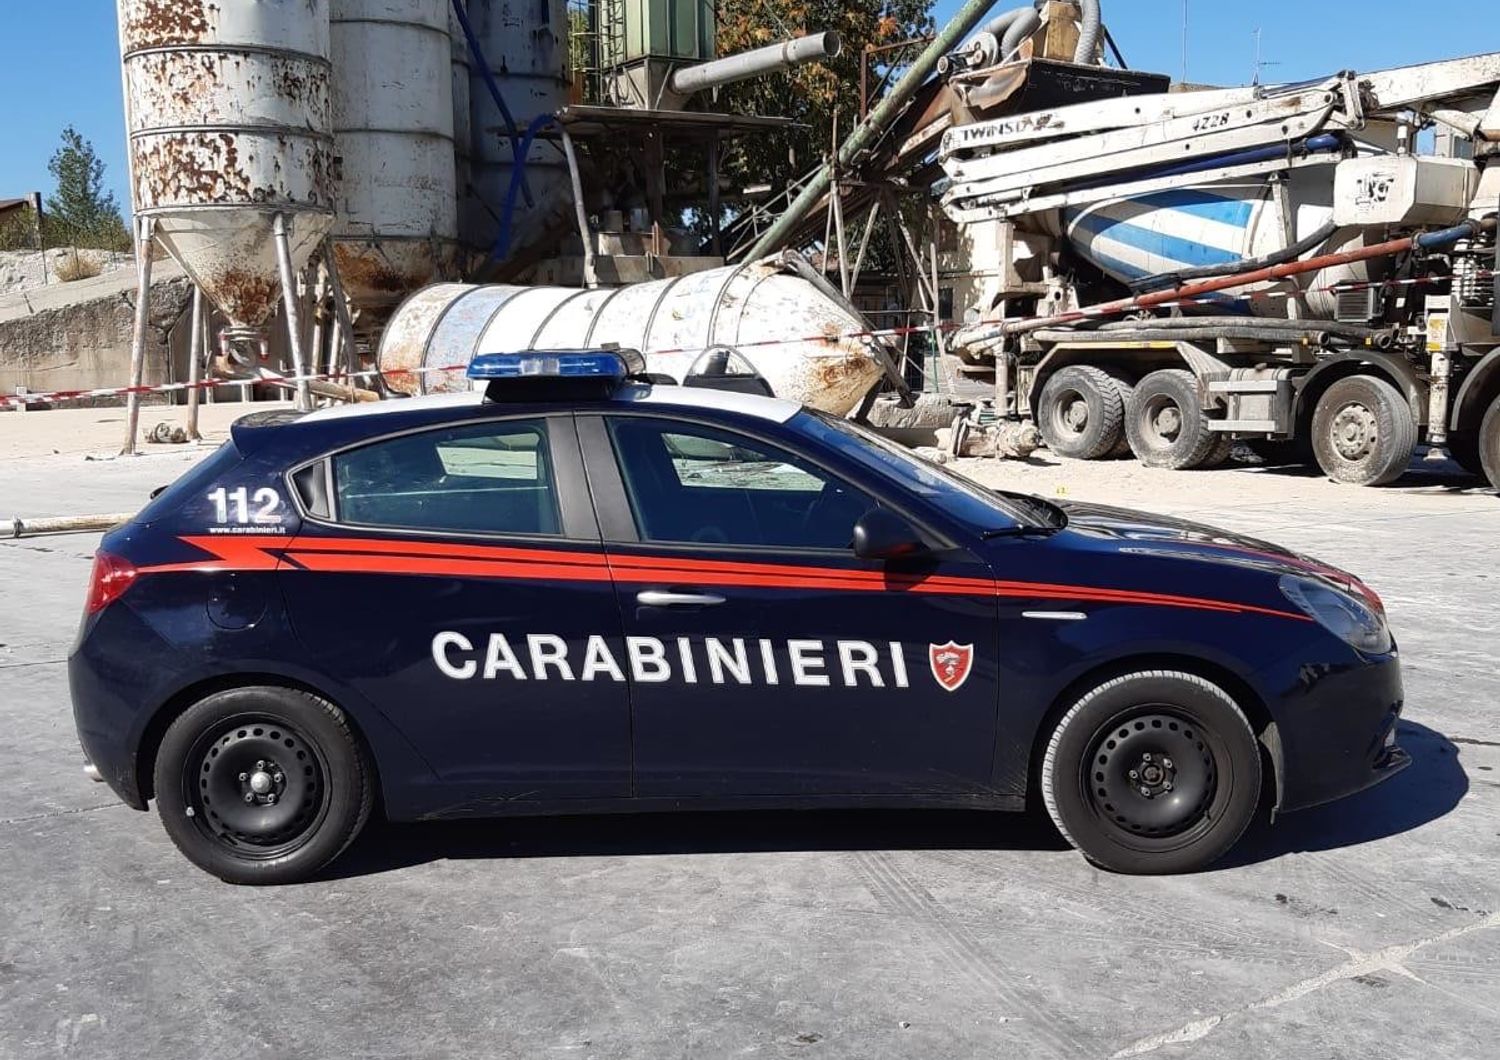 &nbsp;Dietro l'auto dei carabinieri, il silos crollato a terra costato la vita all'operaio nel Piacentino&nbsp;